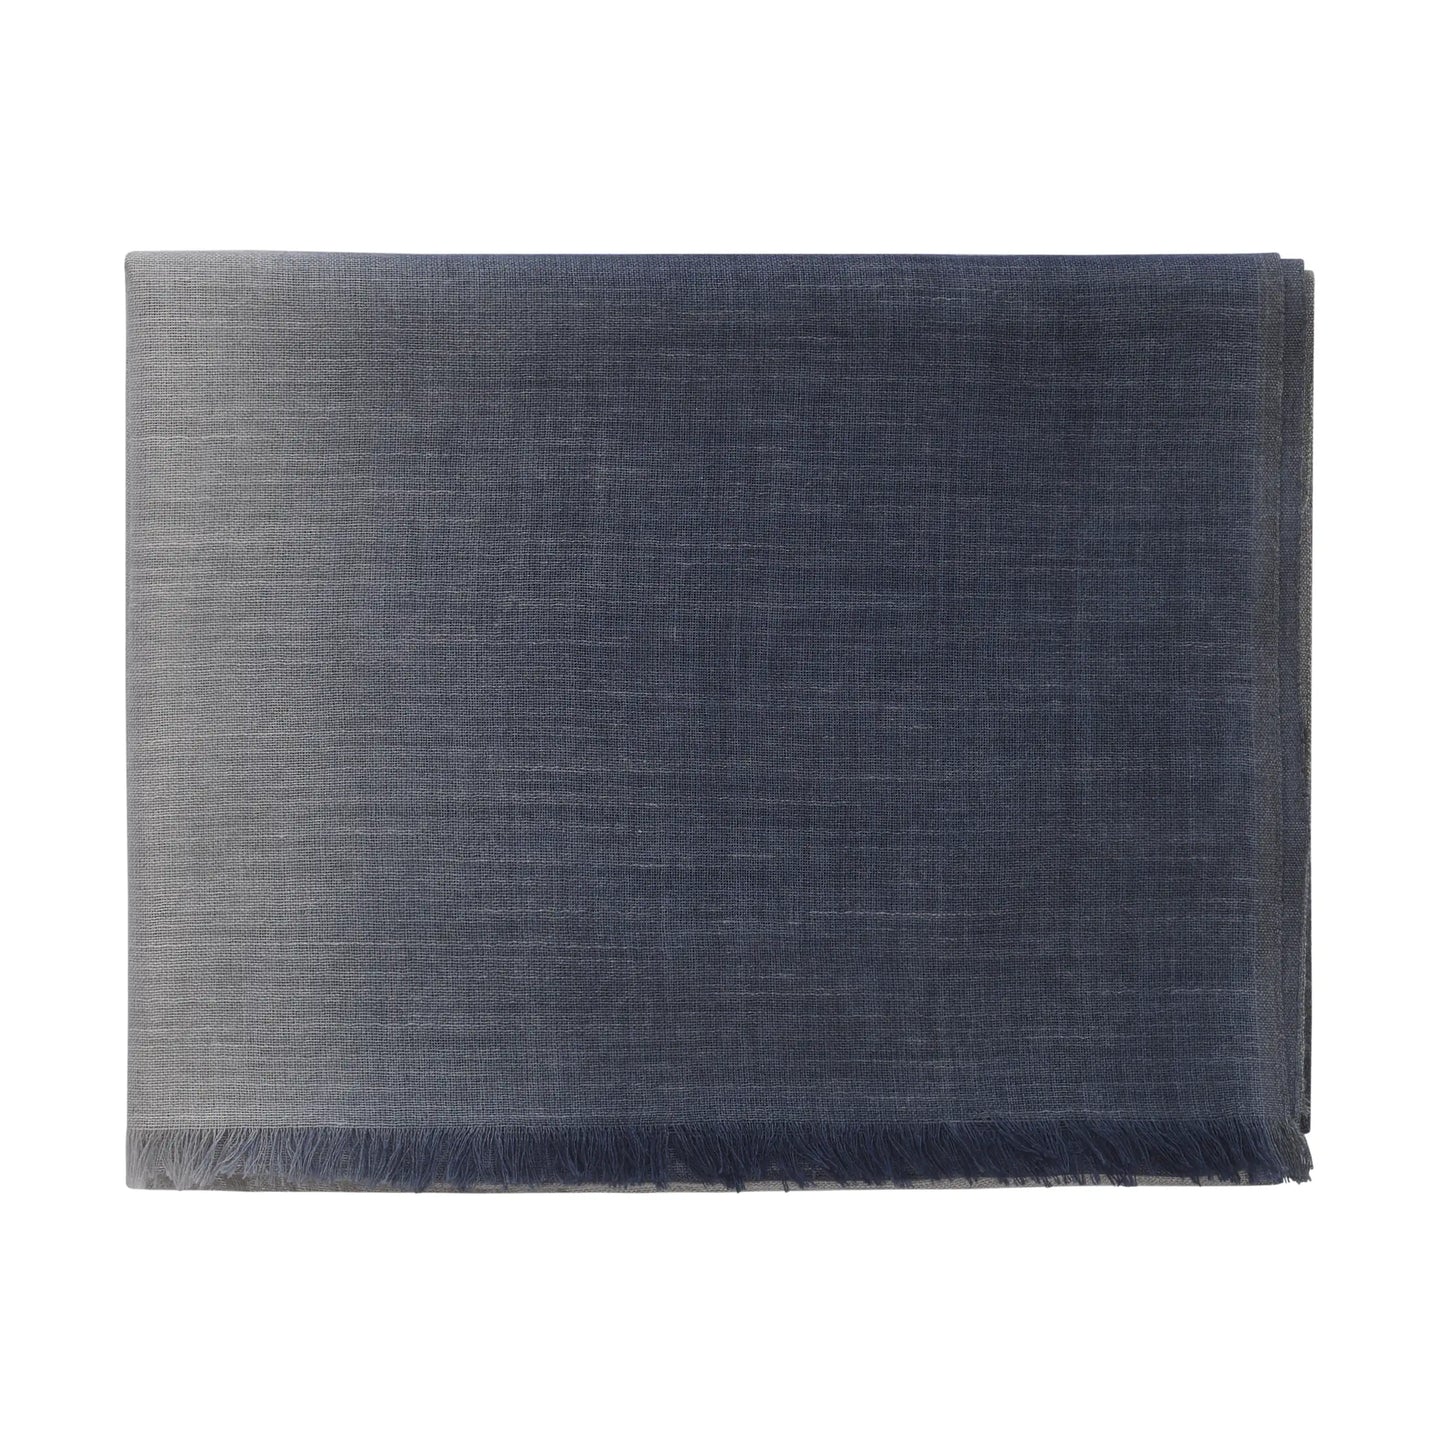 Schal aus Kaschmirmischung in Grau und Blau